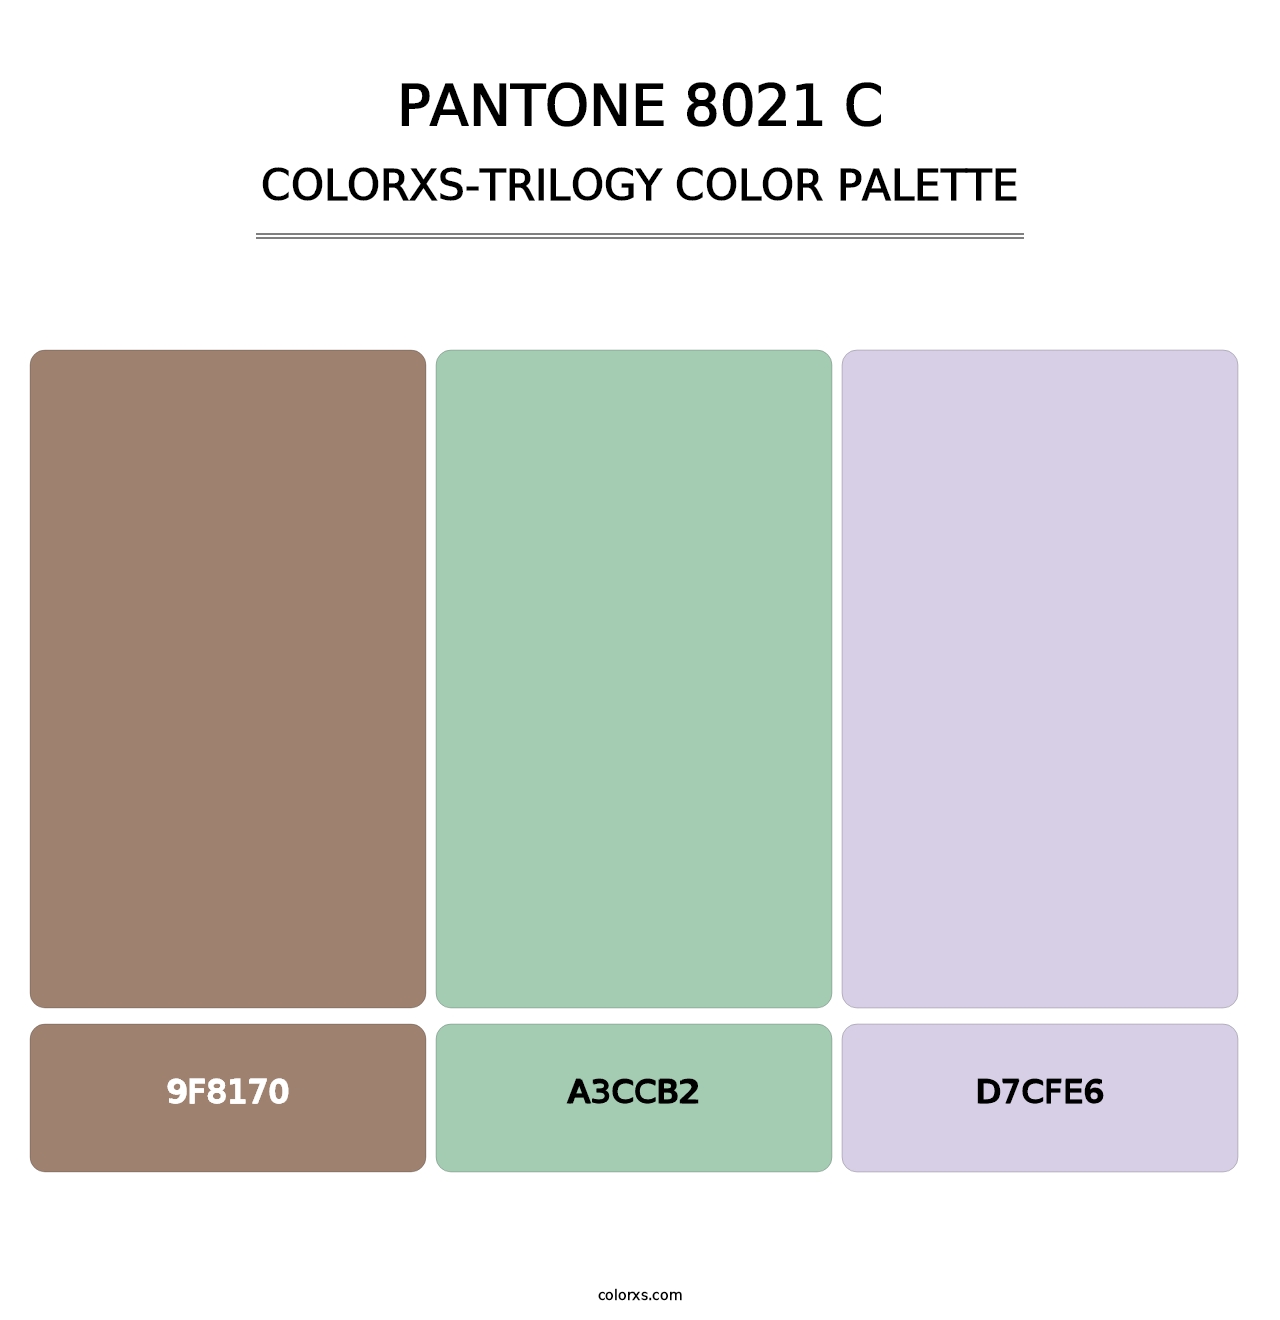 PANTONE 8021 C - Colorxs Trilogy Palette